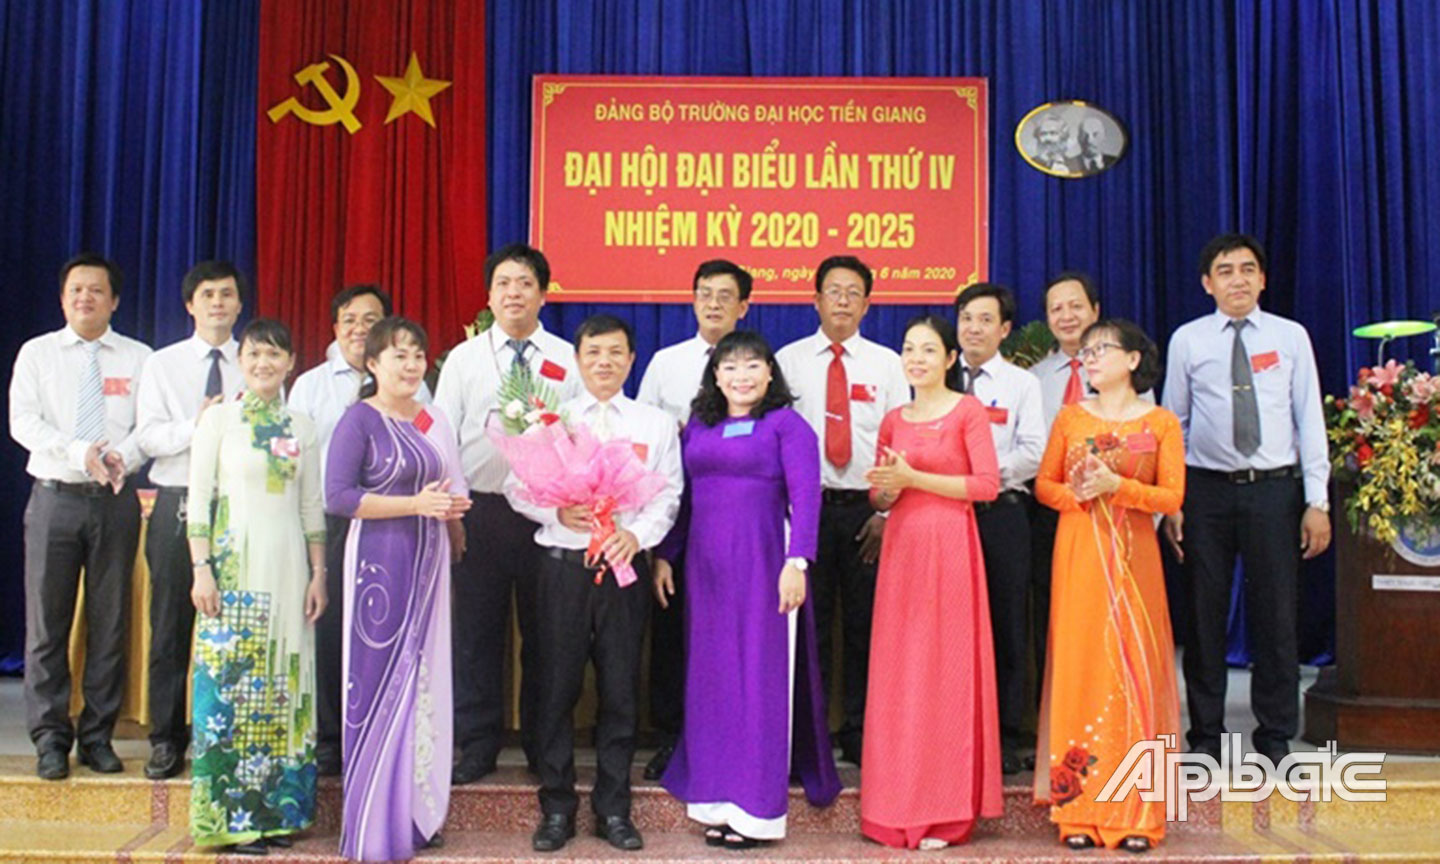 Đồng chí Thái Ngọc Bảo Trâm chụp ảnh lưu niệm cùng Ban Chấp hành  Đảng bộ Trường Đại học Tiền Giang nhiệm kỳ mới tại Đại hội.